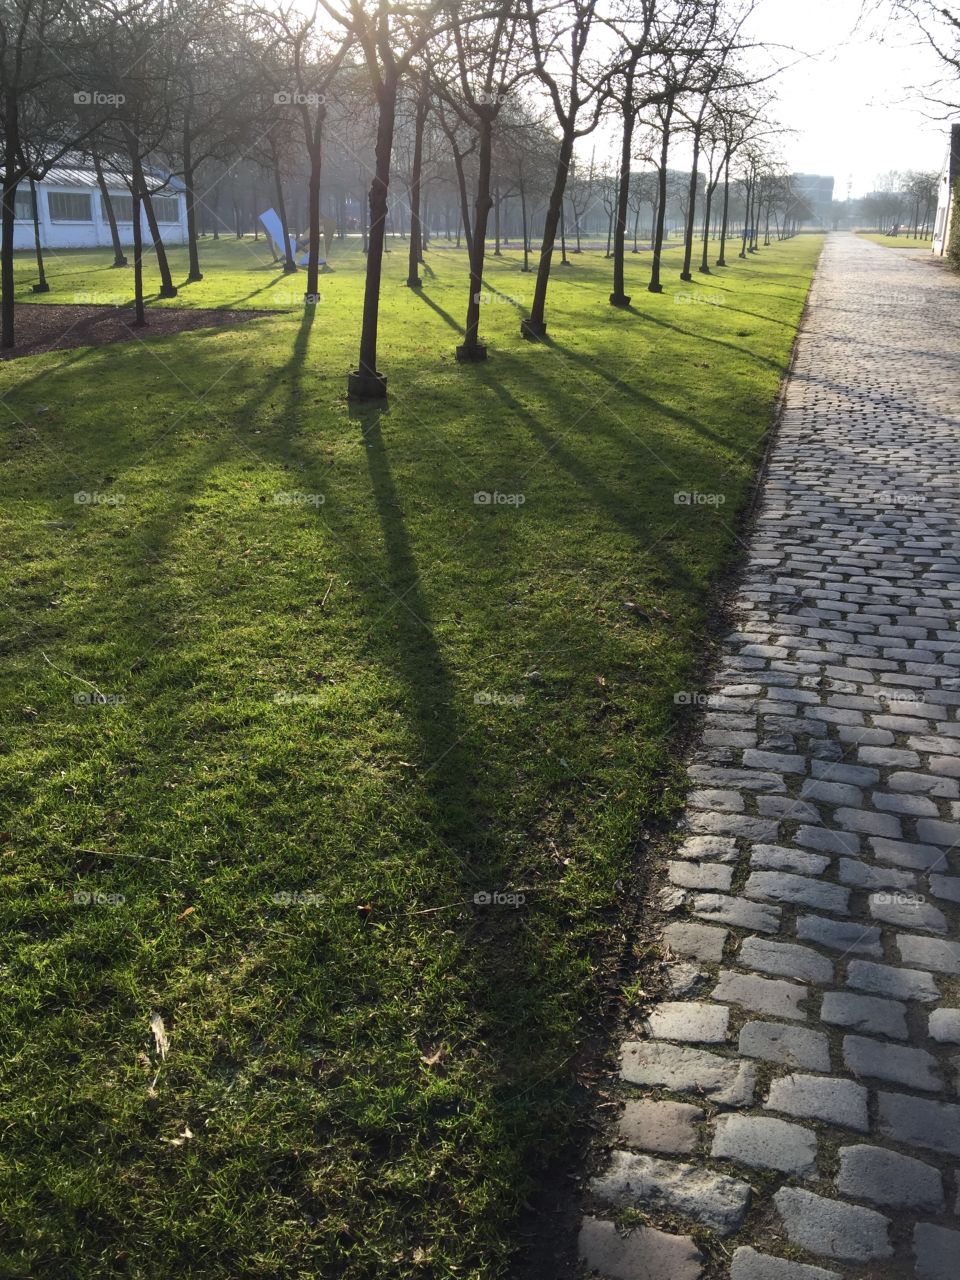 Morning in a park in Antwerp